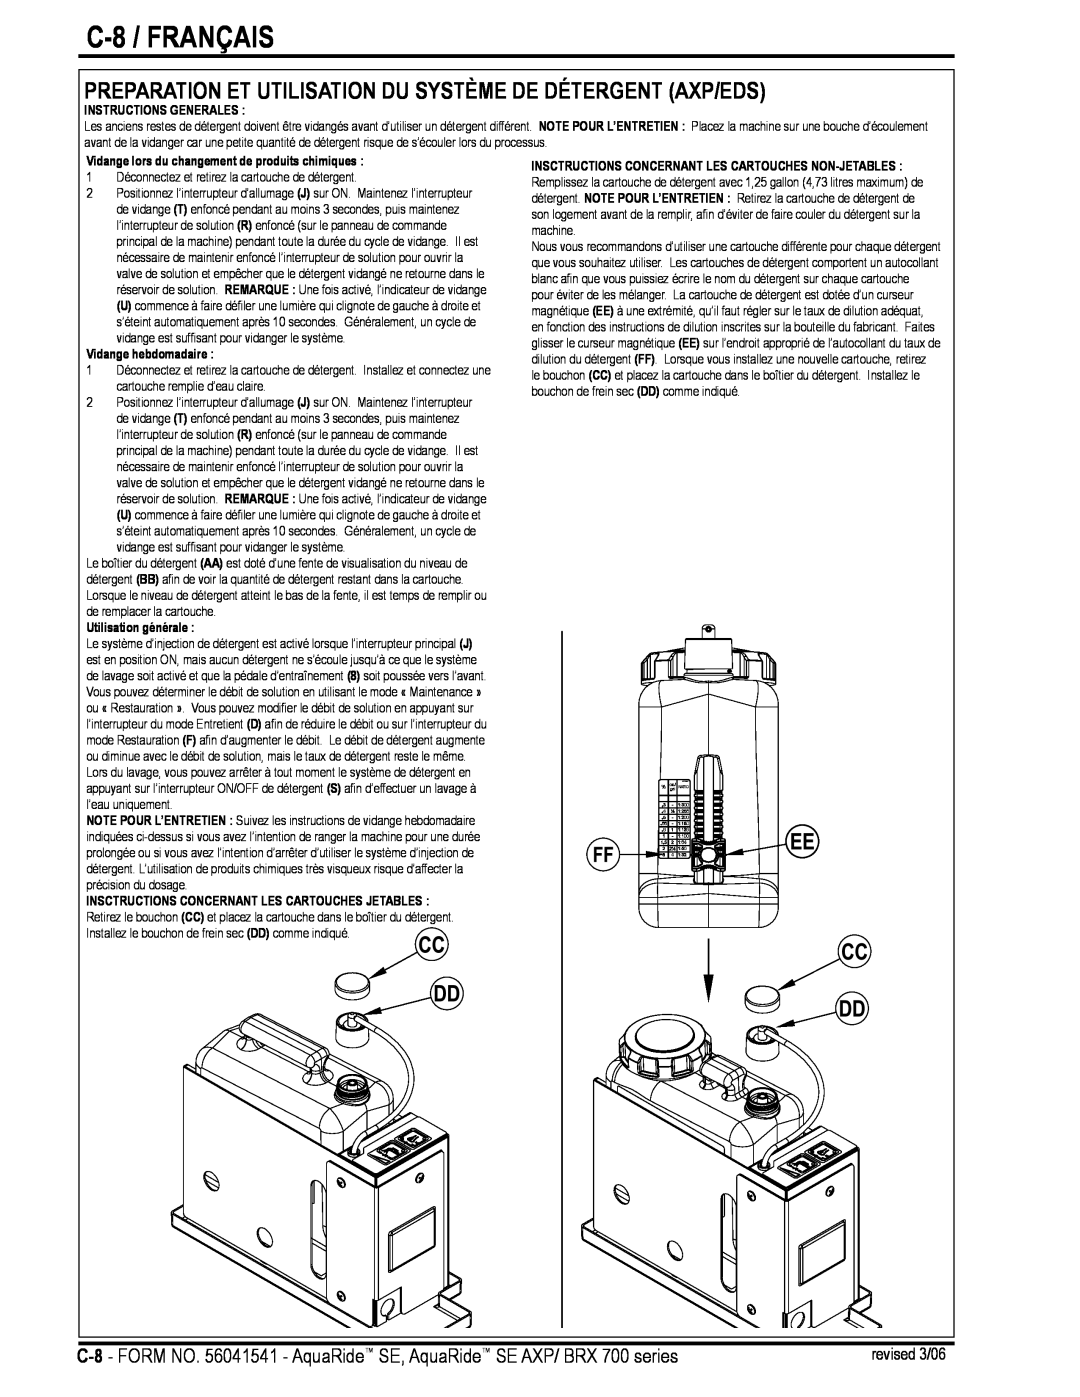 Nilfisk-Advance America BRX 700 Series manual C-8 / FRANÇAIS, Preparation Et Utilisation Du Système De Détergent Axp/Eds 